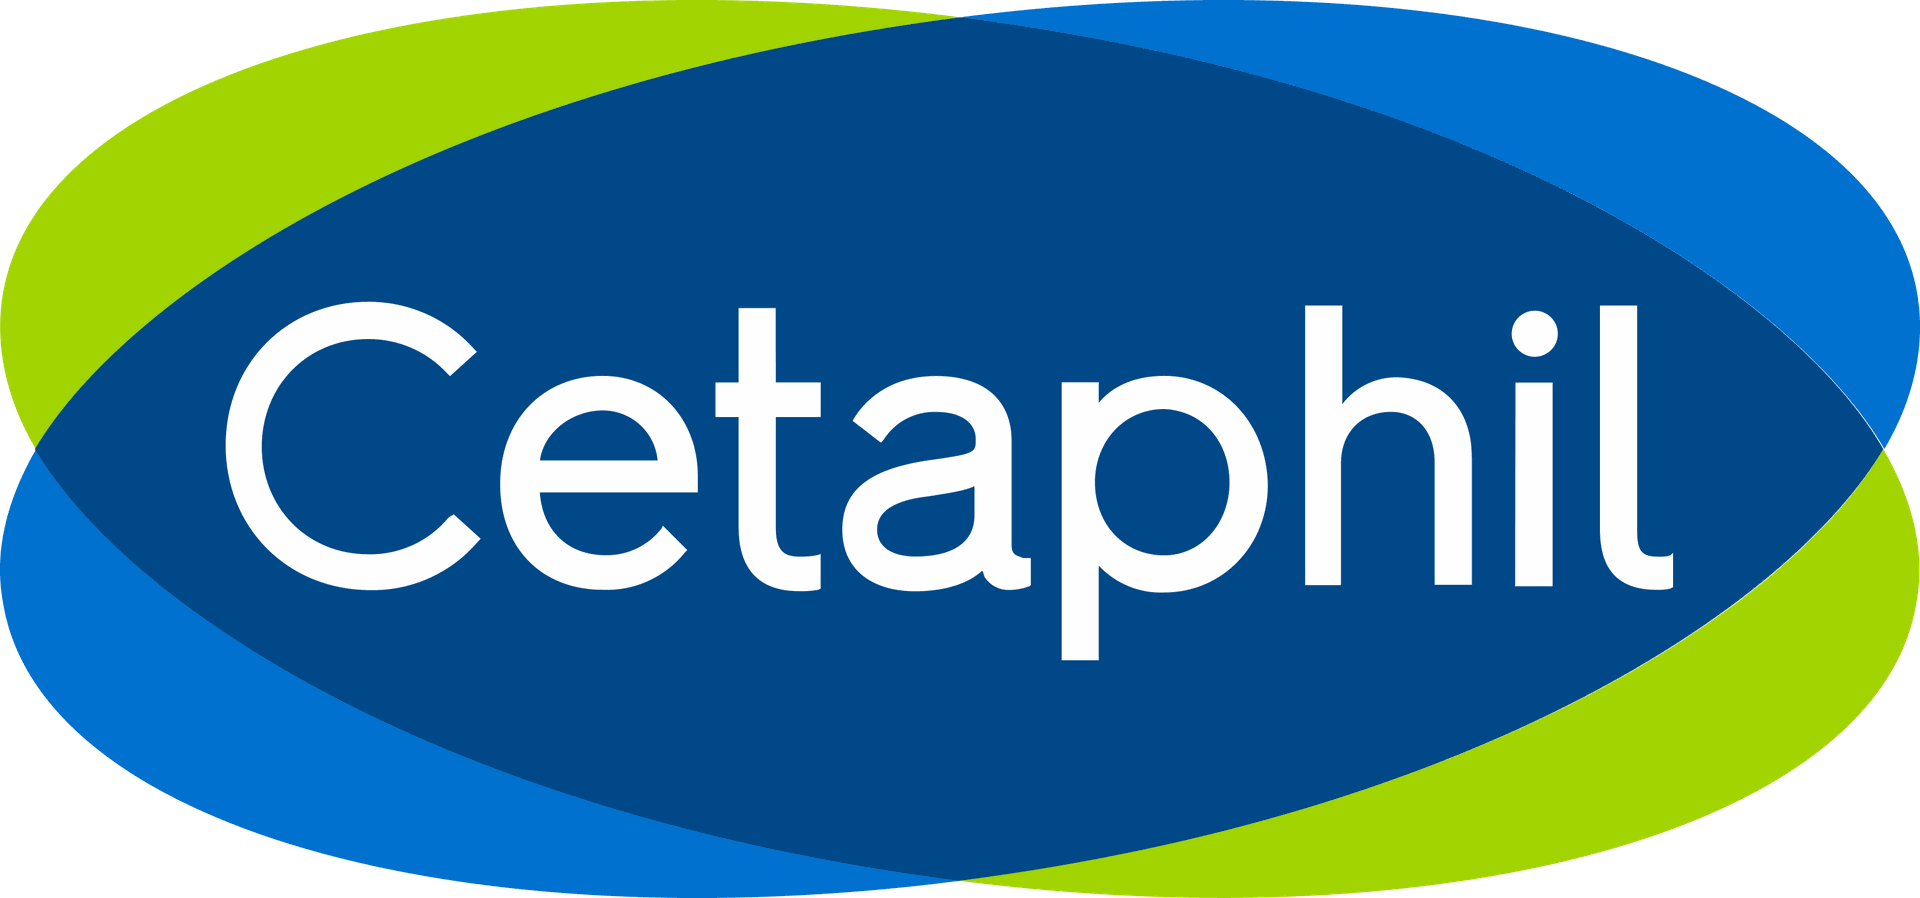 Brand: Cetaphil